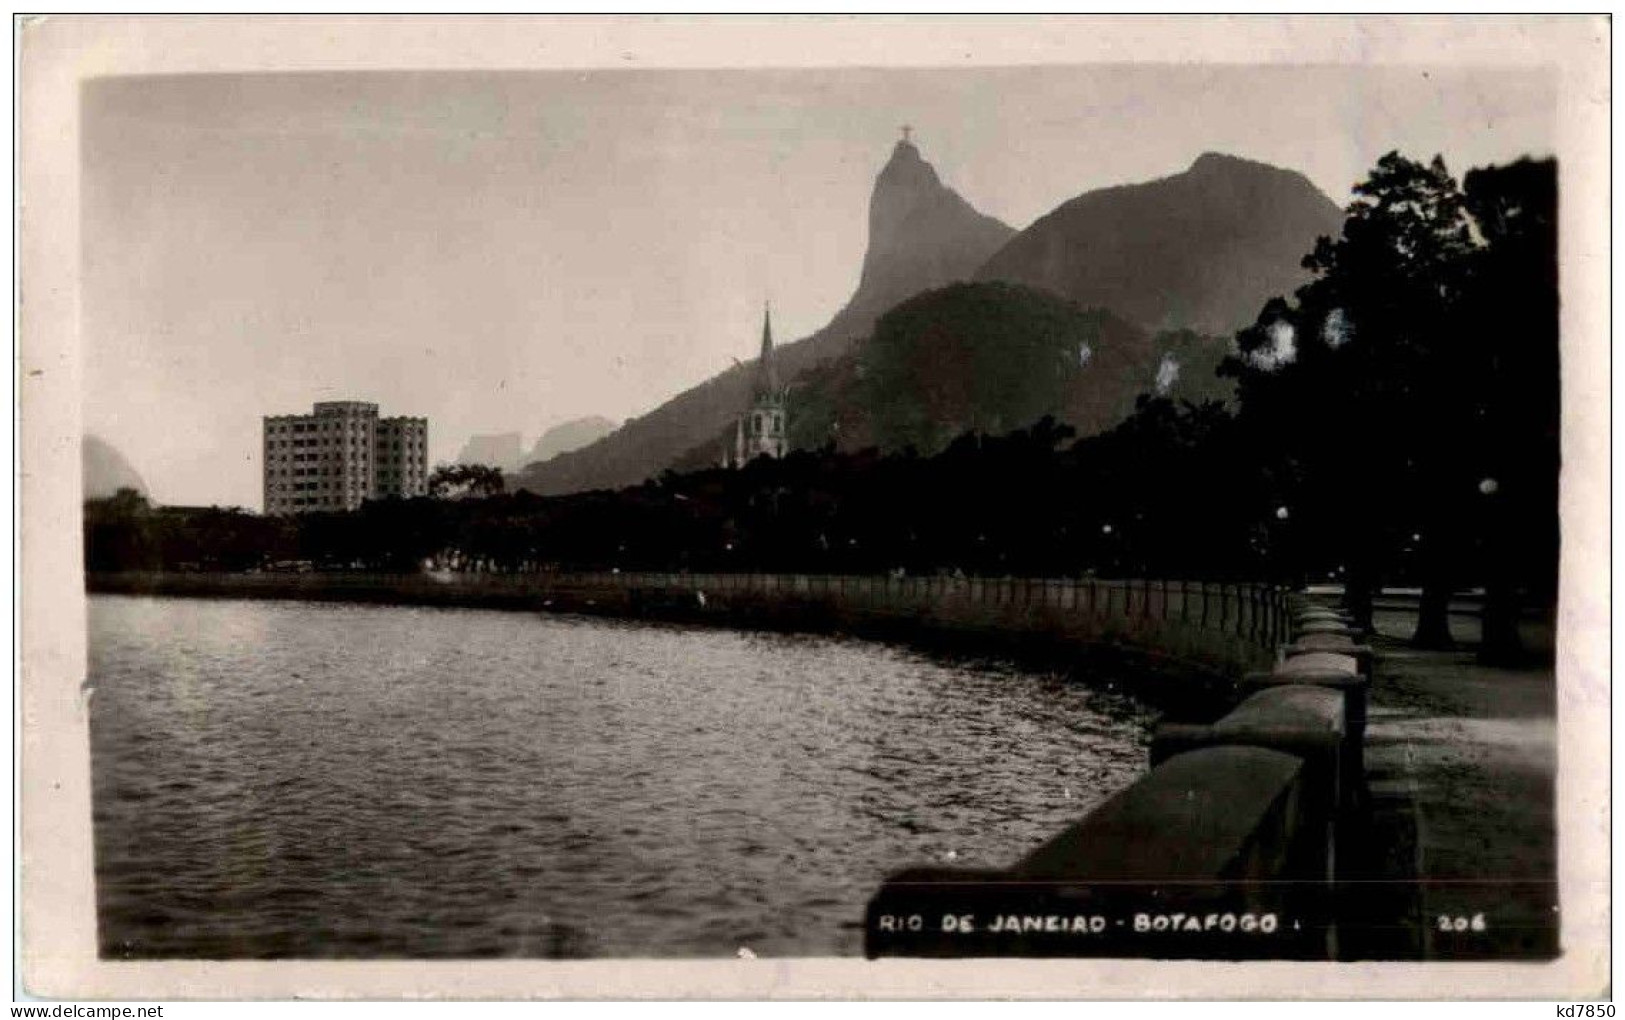 Rio De Janeiro - Botafogo - Rio De Janeiro